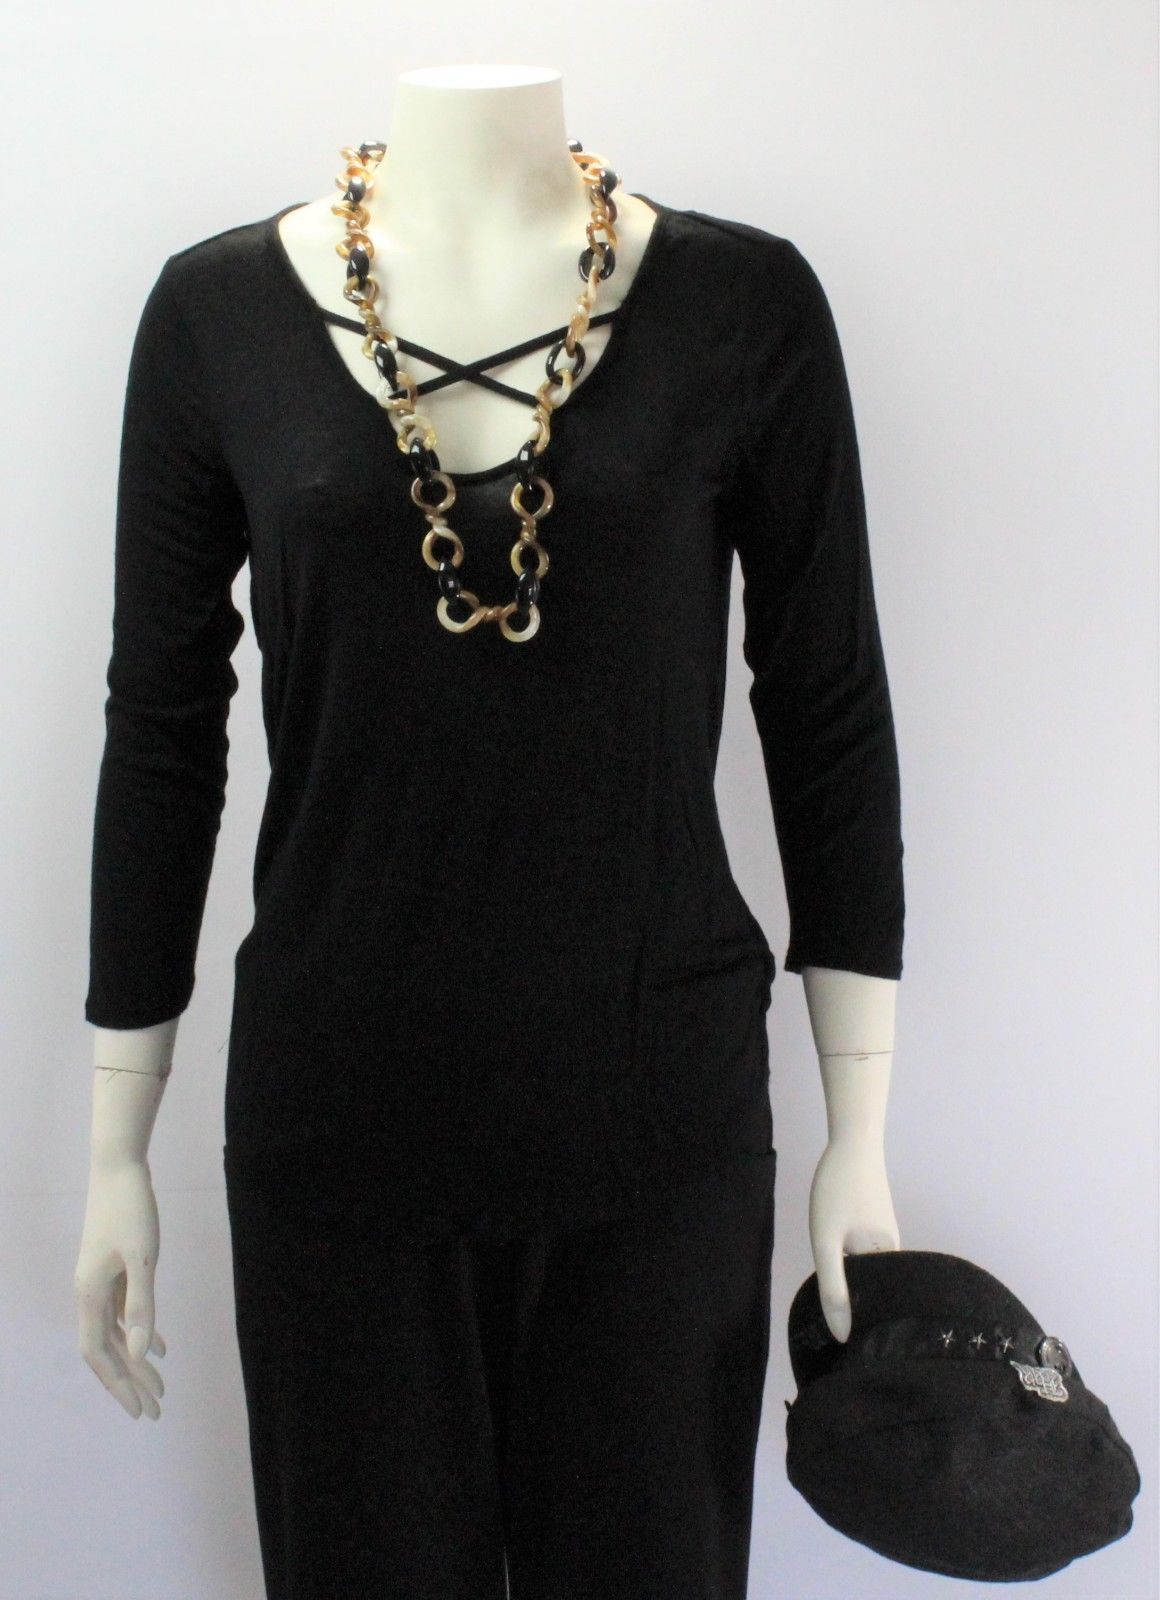 Women's Mudd Black Criss Cross Long Sleeve Top Shirt - $19.80